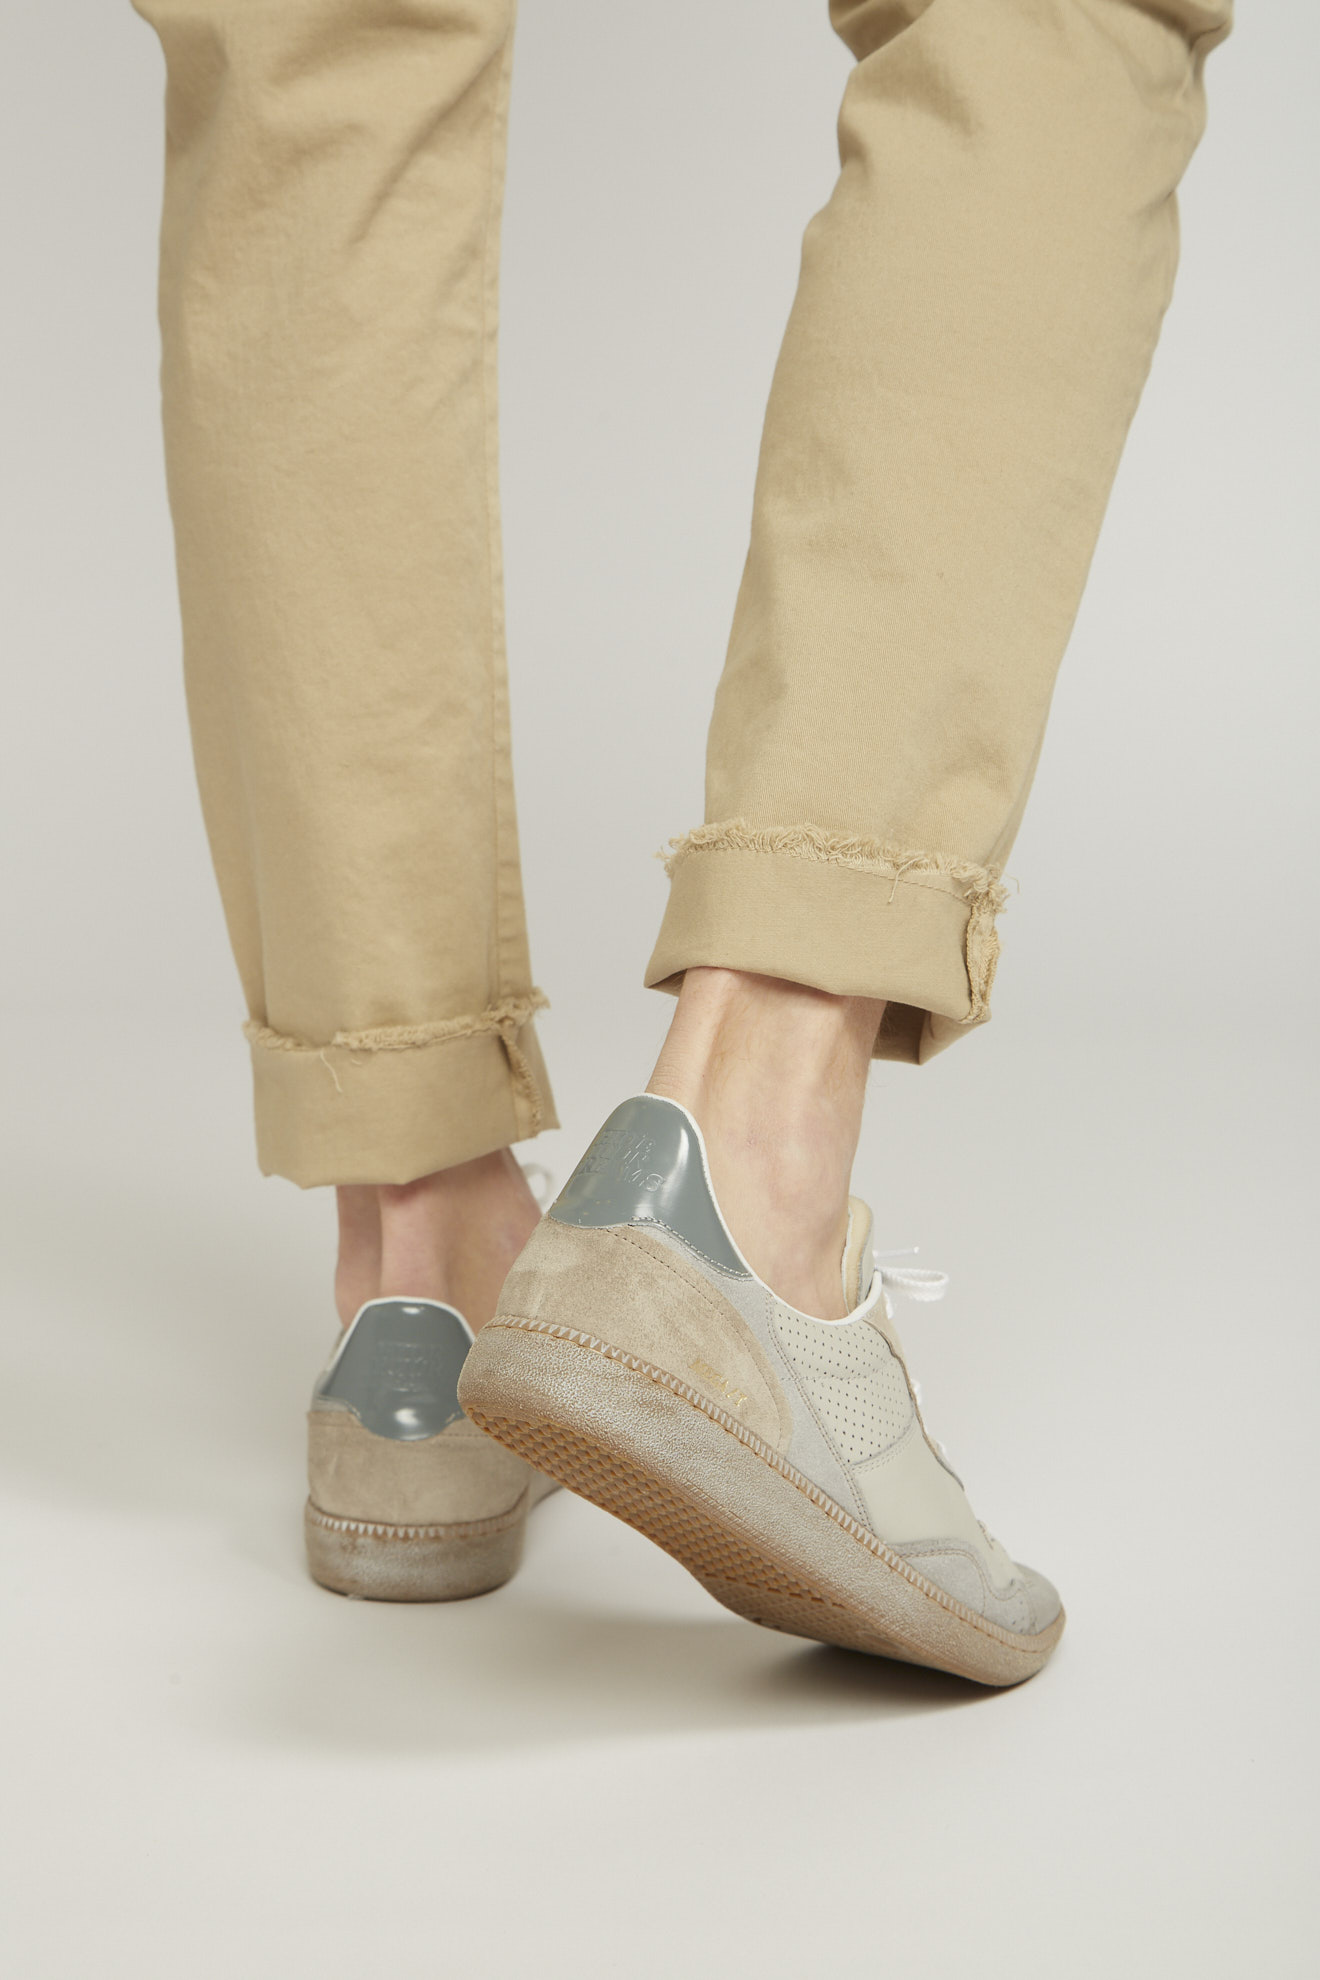 hidnander shoes beige white&grey details leather model back